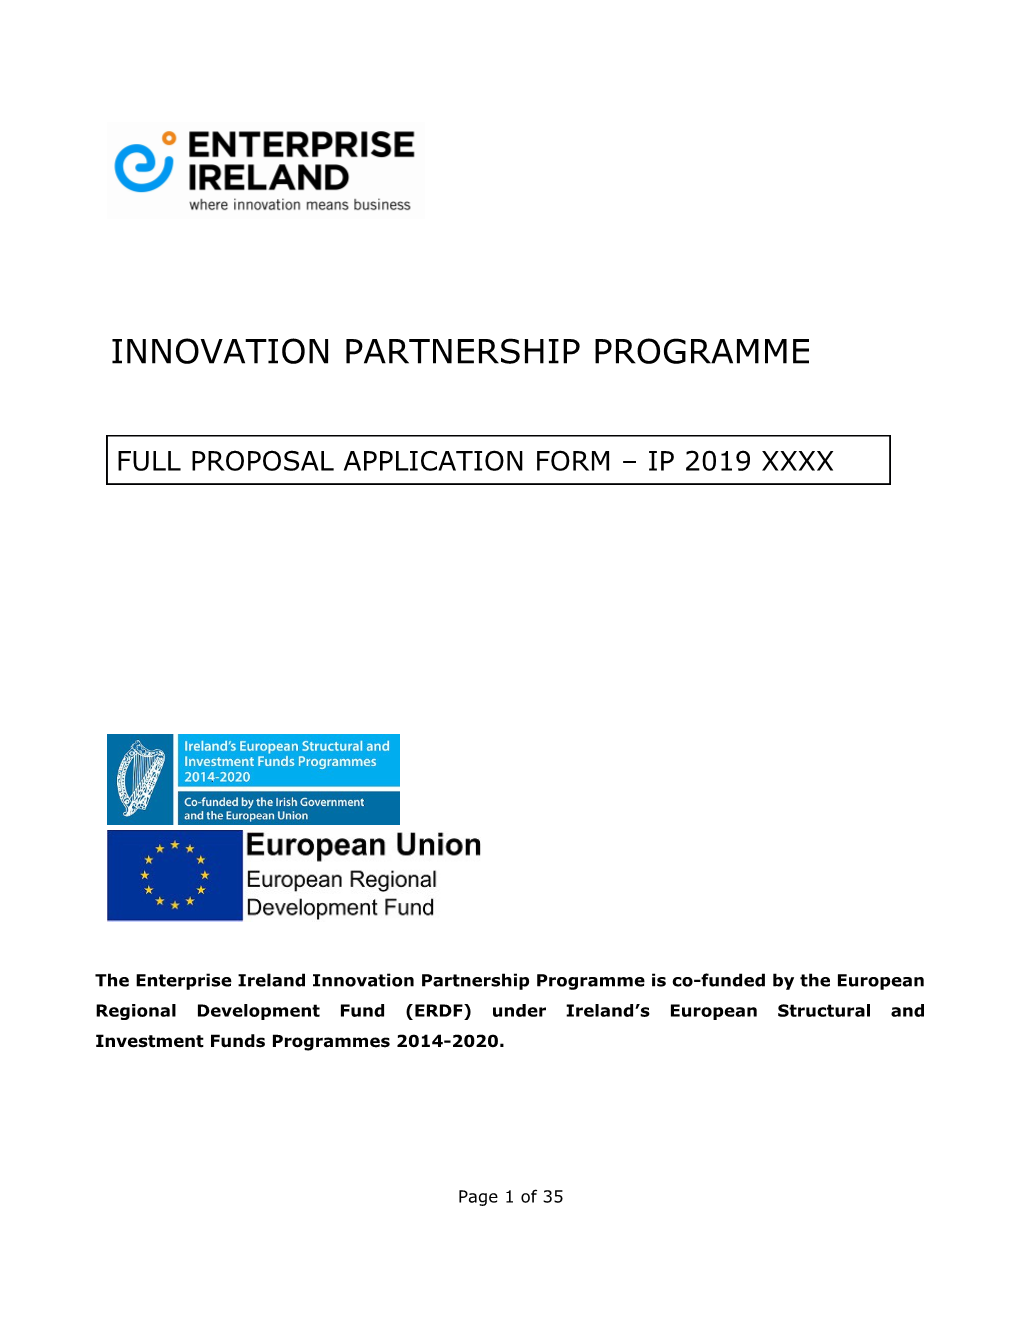 Innovation Partnership Programme